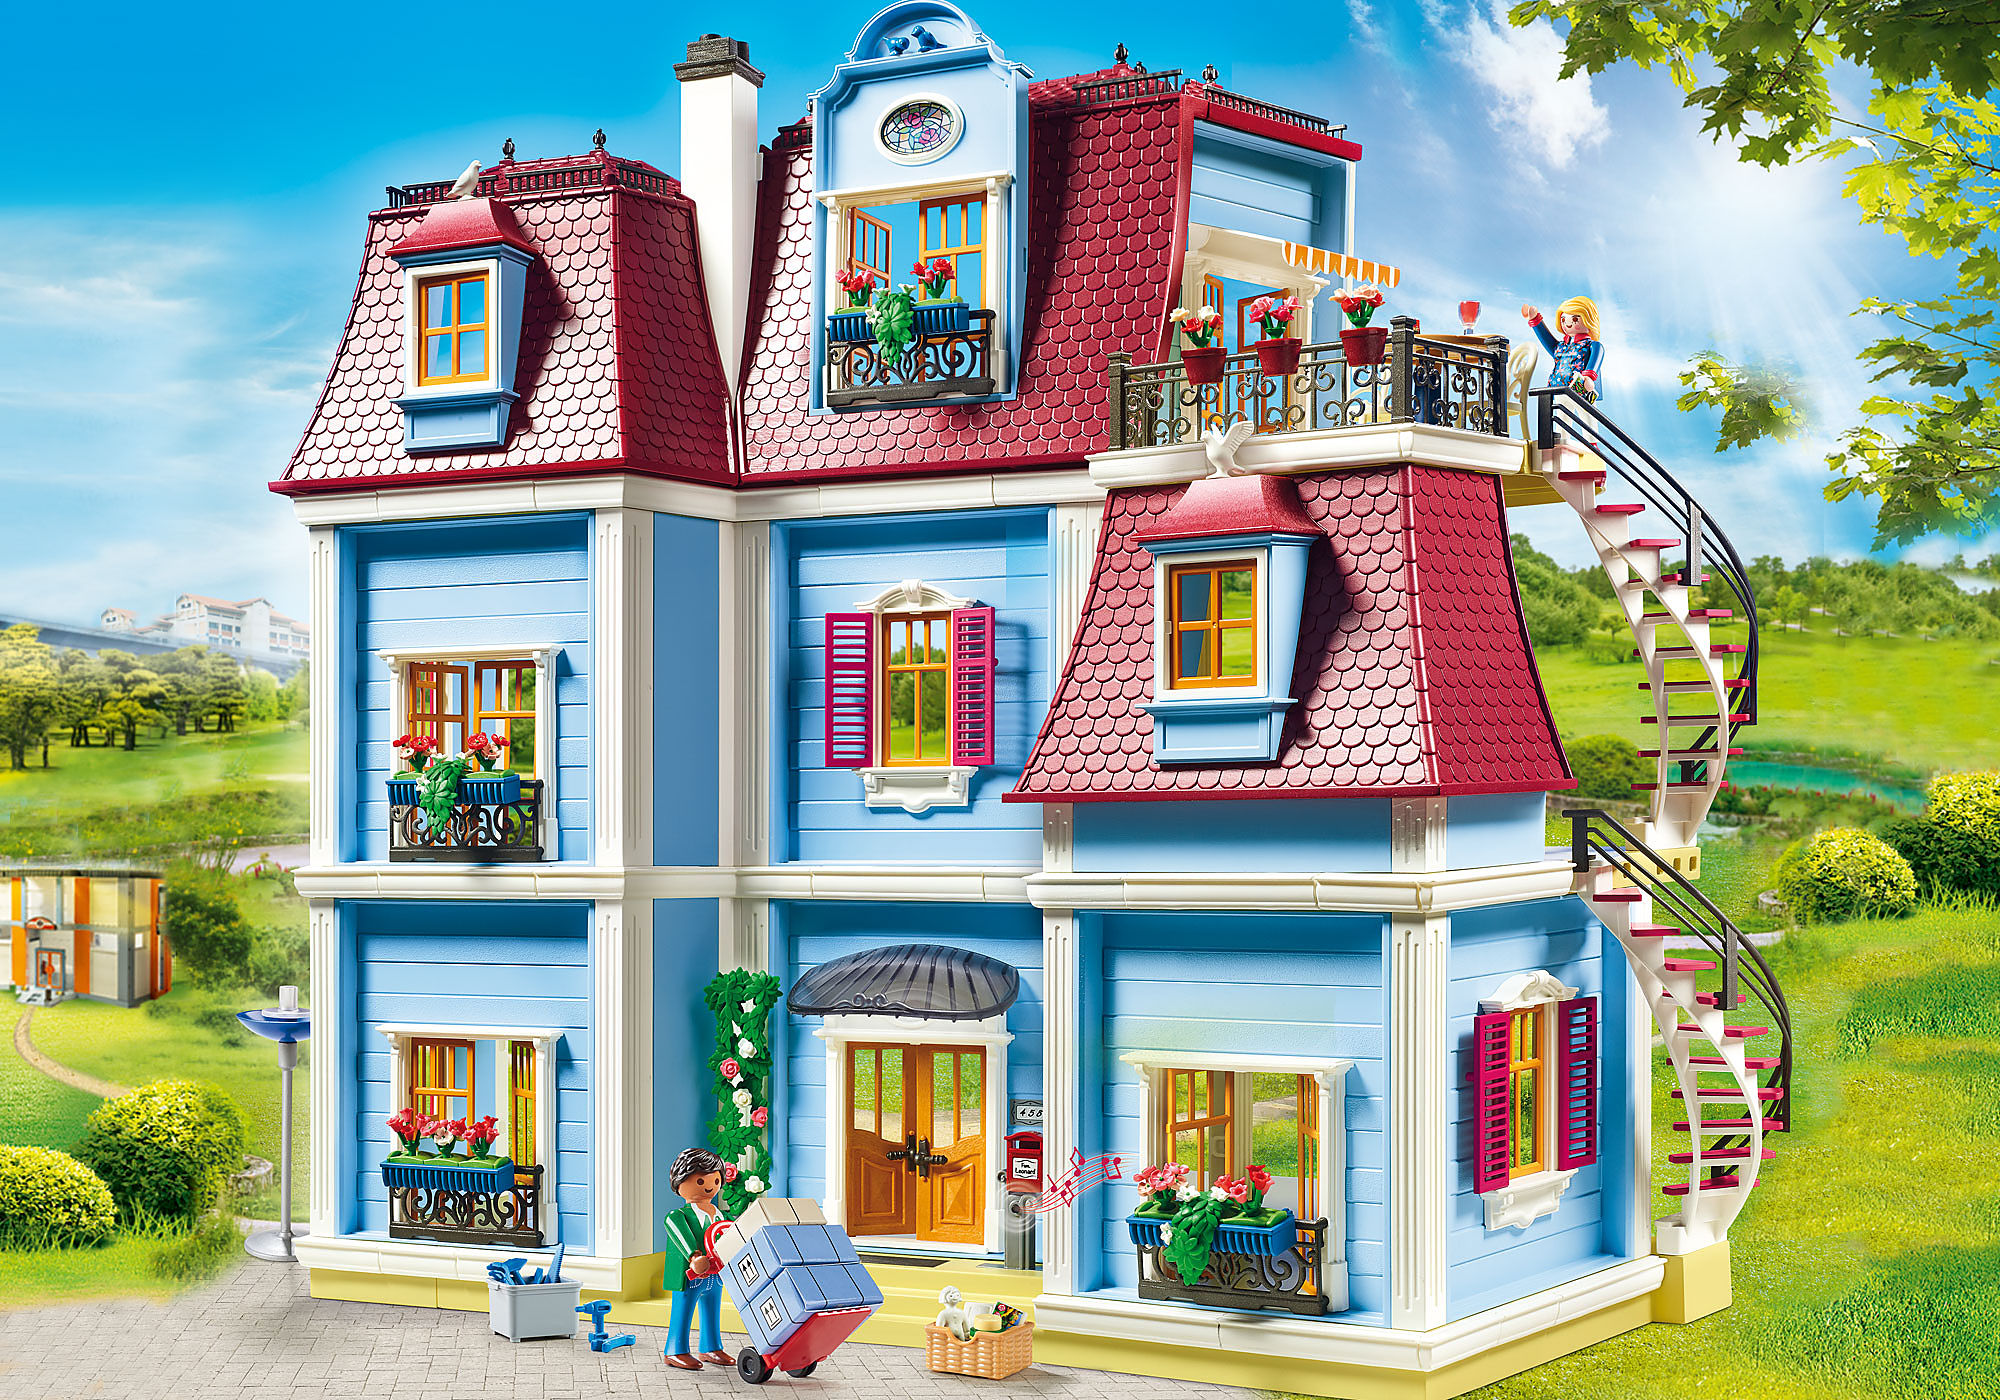 Playmobil 70210 Chambre de bébé - Dollhouse - avec Deux Personnages, lit  bébé, Table à Langer, Lampe sur Pied, Fauteuil à Bascule et des Accessoires  - pour aménager la Grande Maison 